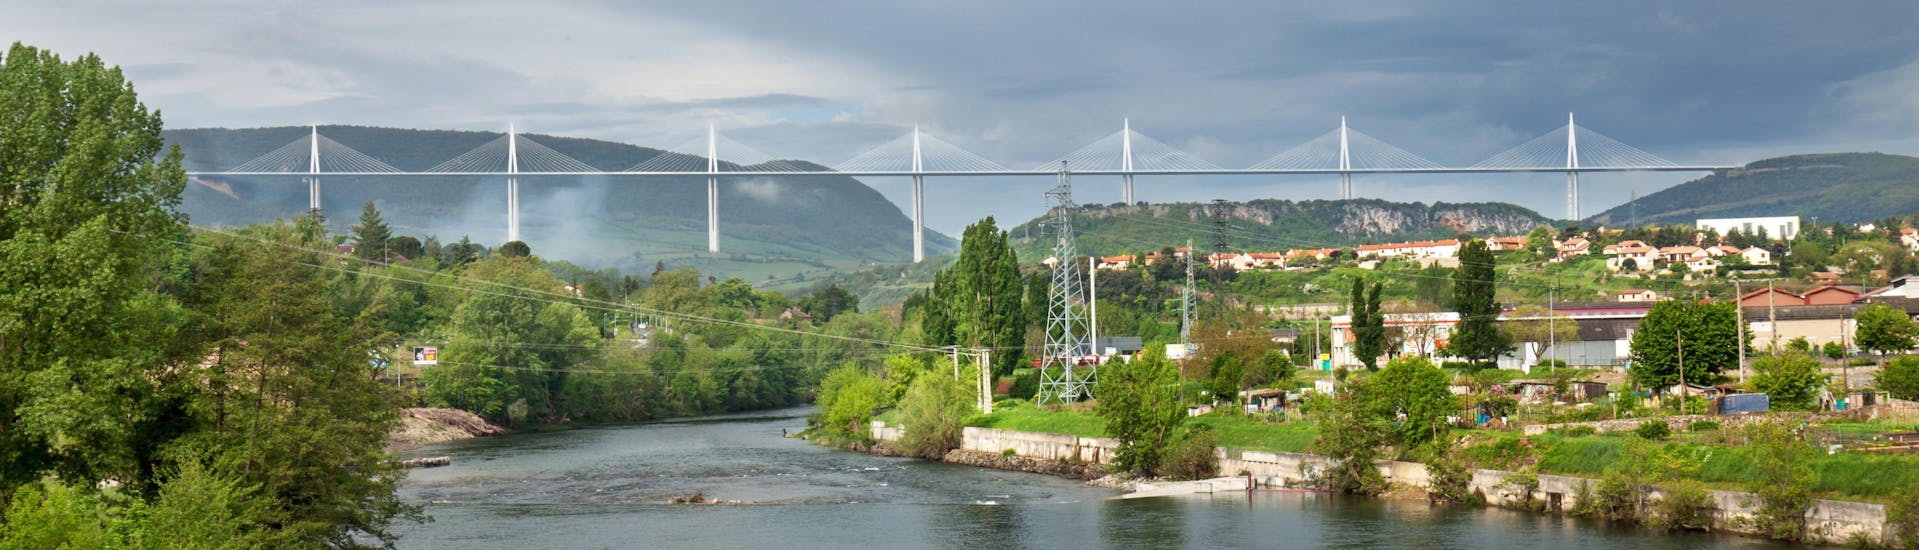 Vue du pont de Millau sous lequel coule la rivière Tarn, non loin de Creissels, une destination populaire pour faire du canoë.